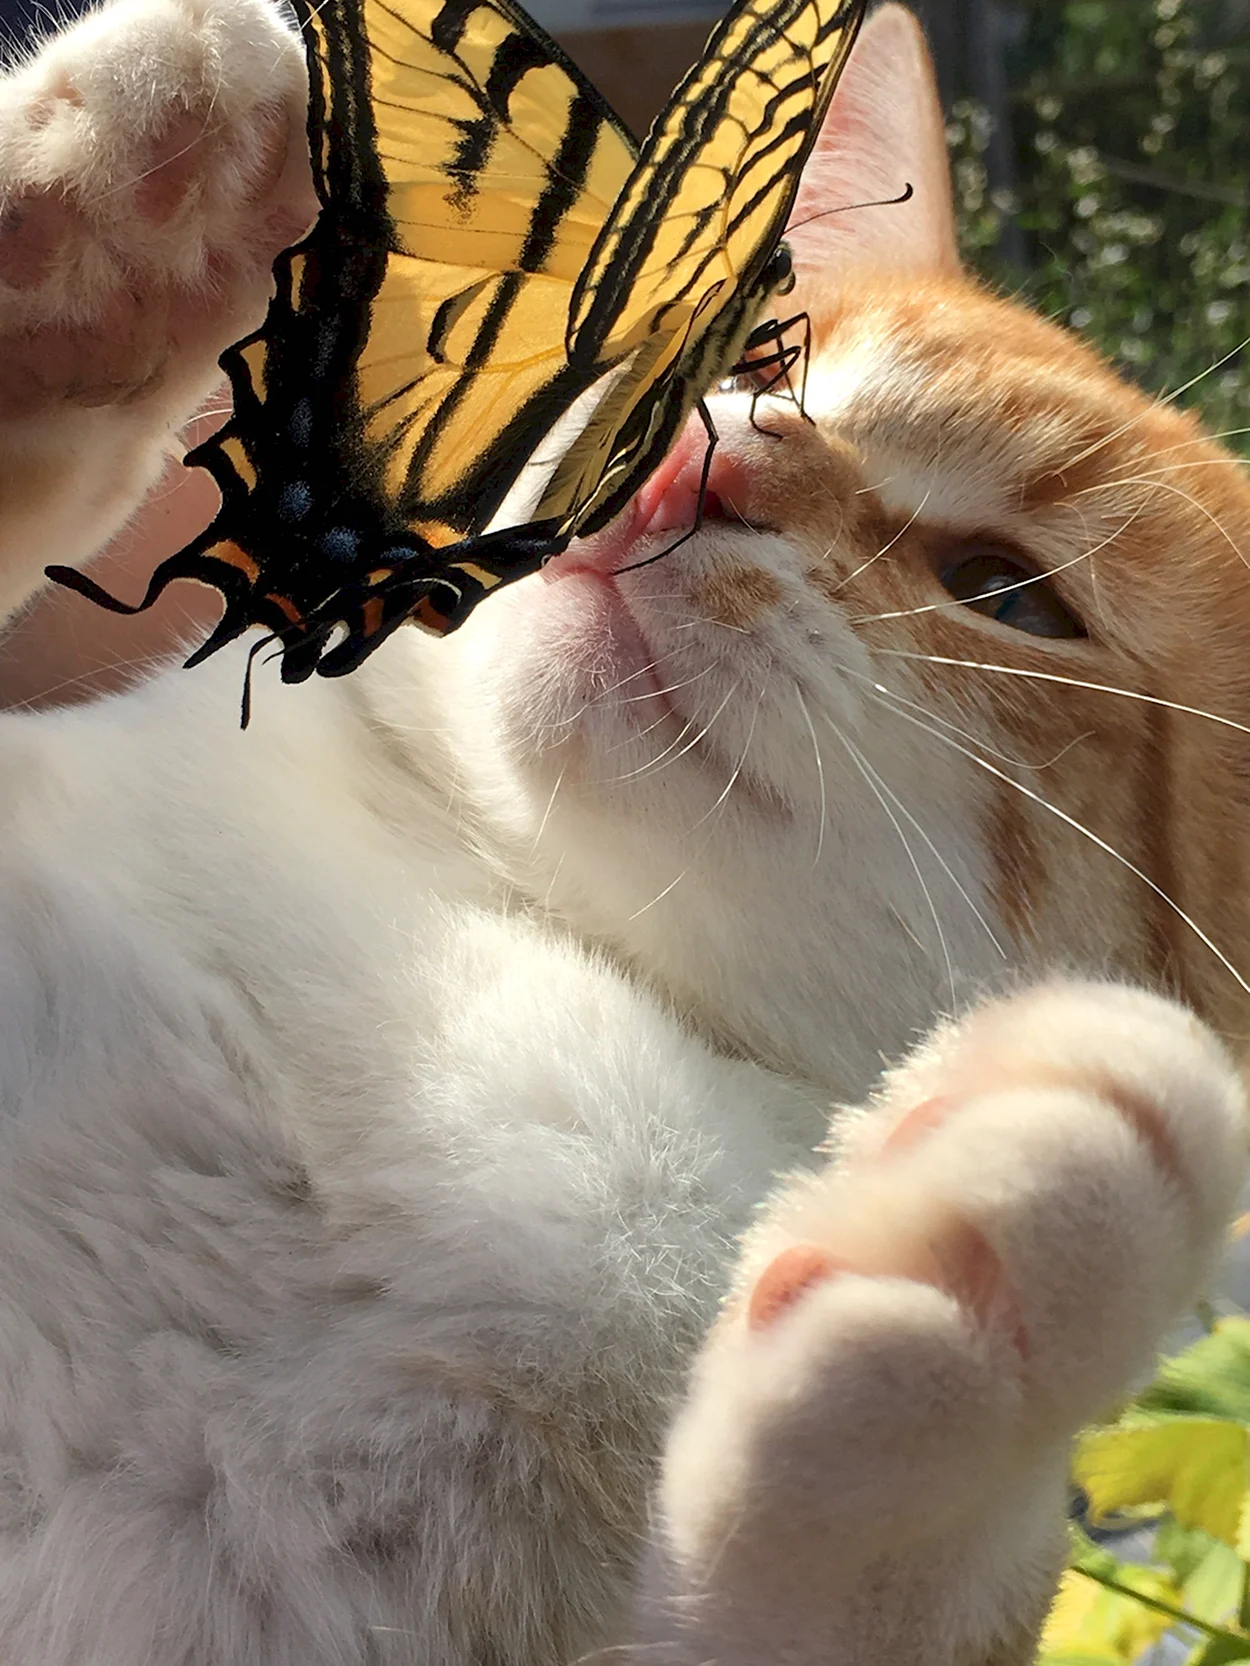 Бабочка на носу у животного. Красивое животное